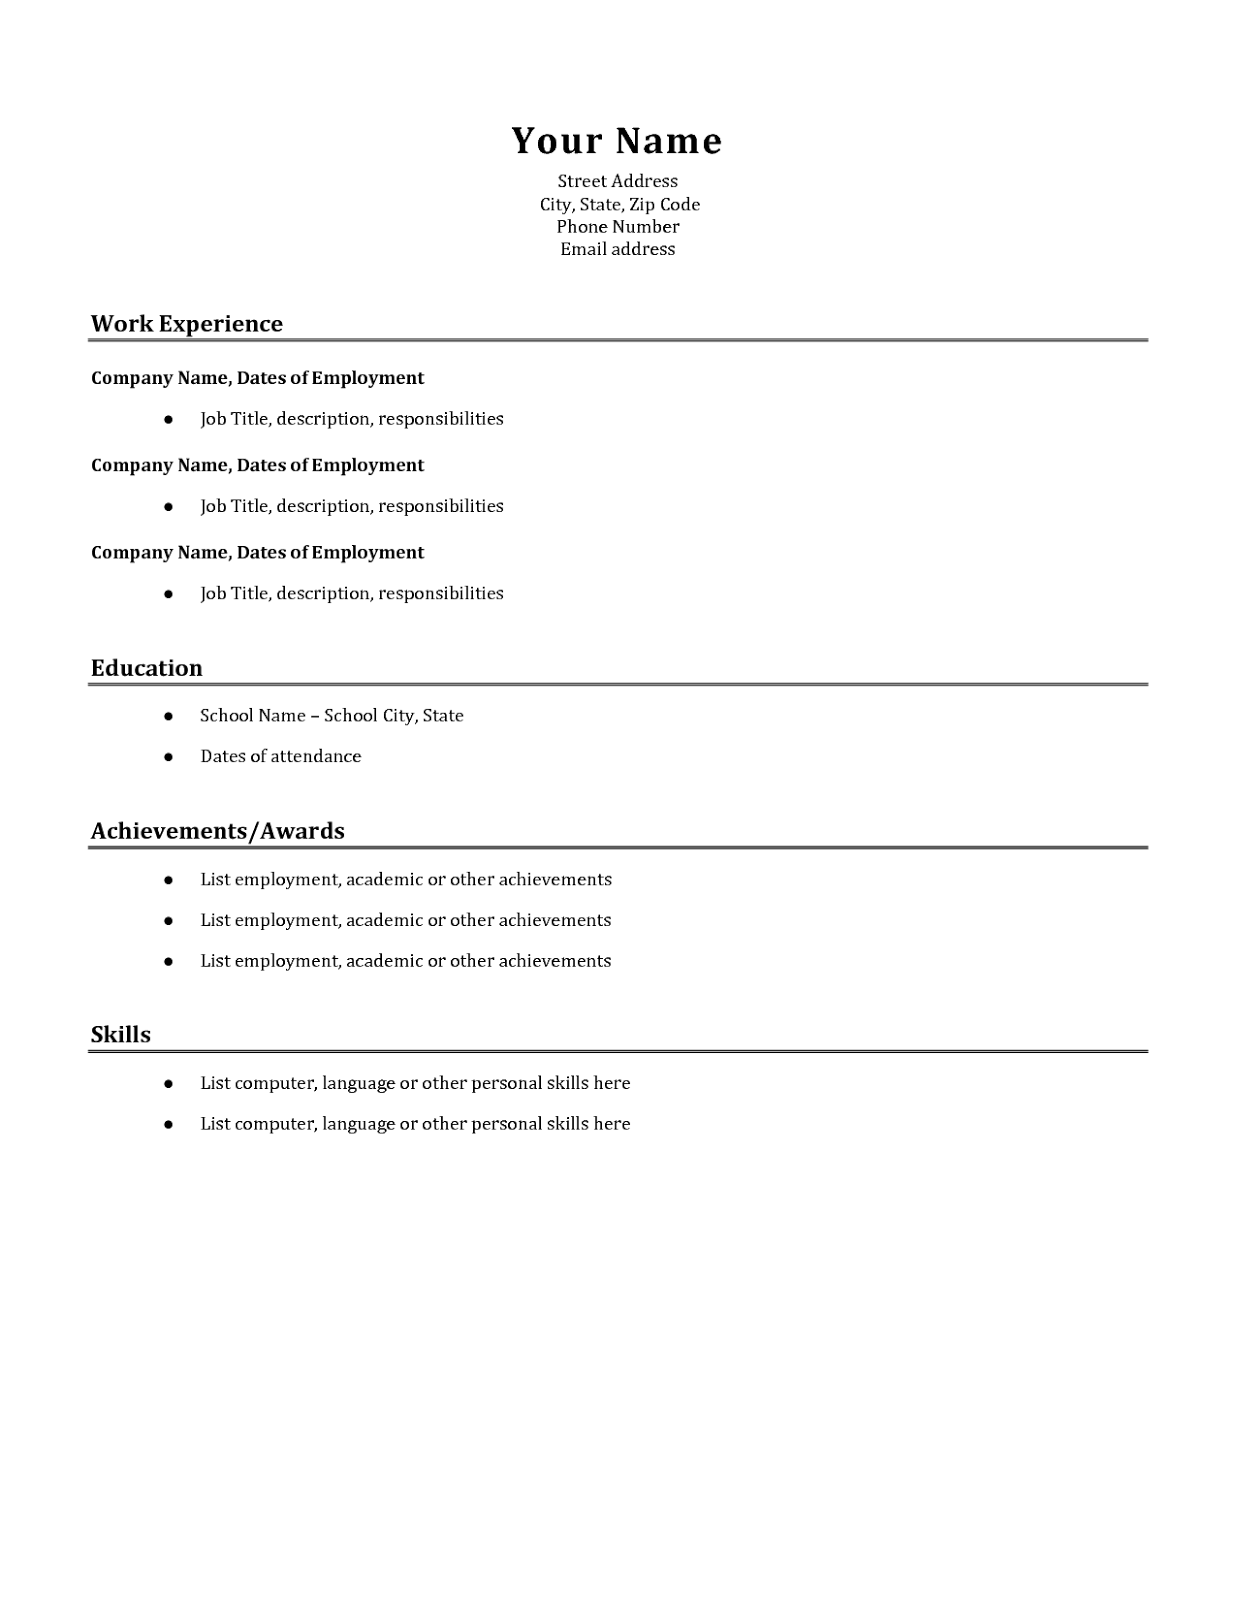 Resume maker resume samples